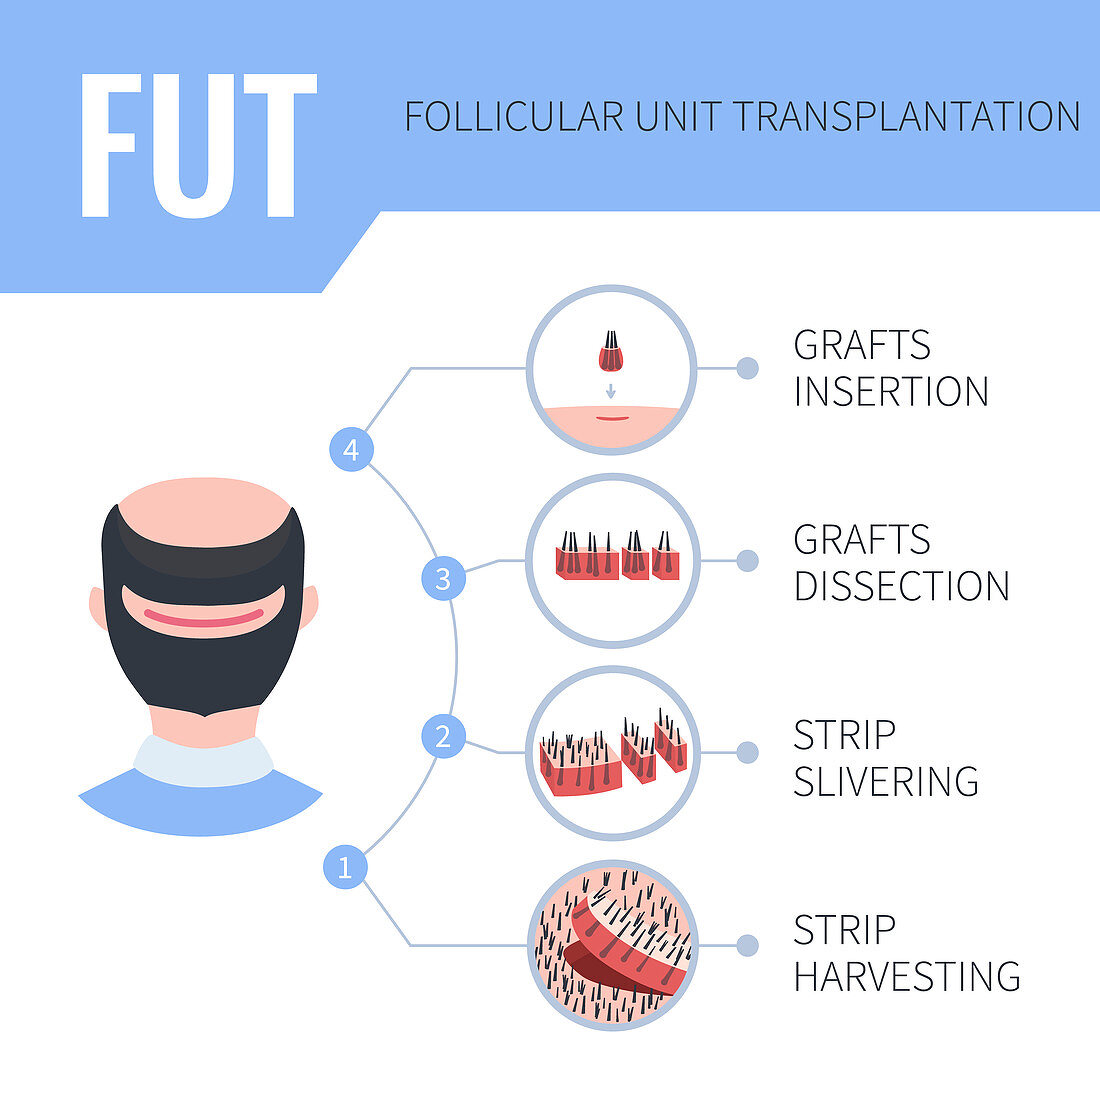 FUT hair transplantation in men, illustration